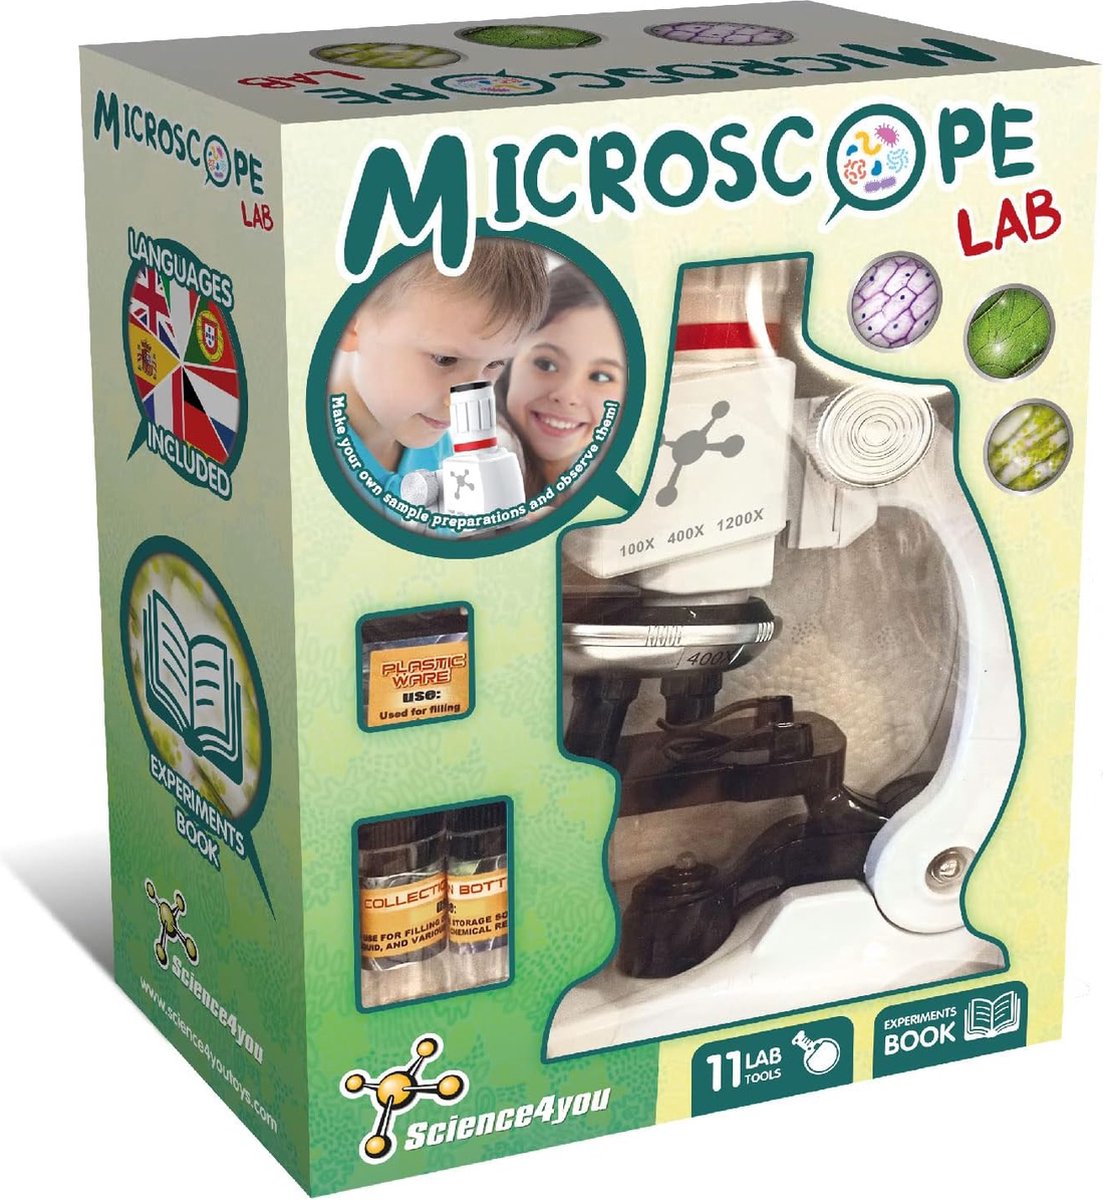 Science4you Microscope Lab - Microscoop voor Kinderen - Compleet met Experimenten & 11 Lab Tools